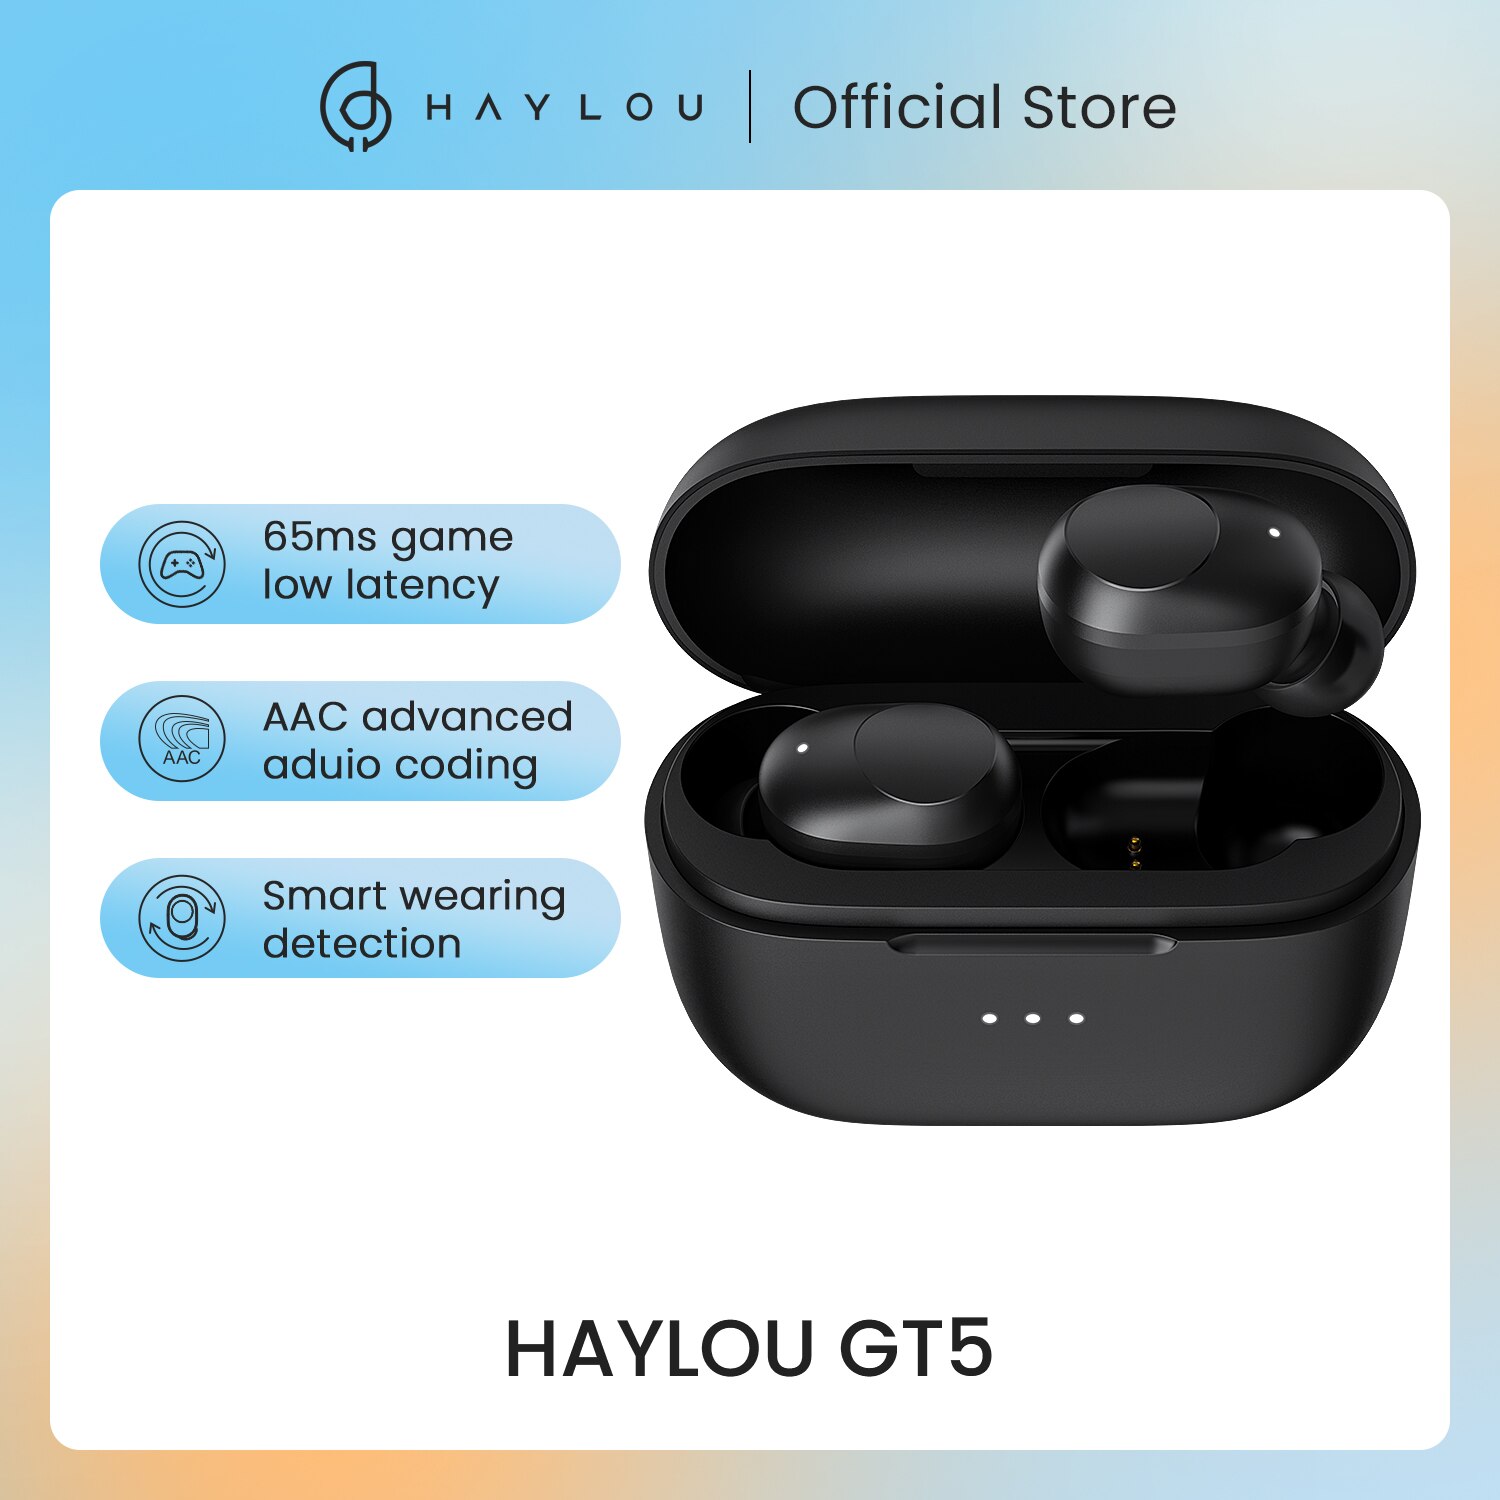 berühren Kontrolle Haylou GT5 Drahtlose Ladung Bluetooth Kopfhörer AAC HD Stereo Klang,Clever Tragen Erkennung, 24hr batterie lebensdauer